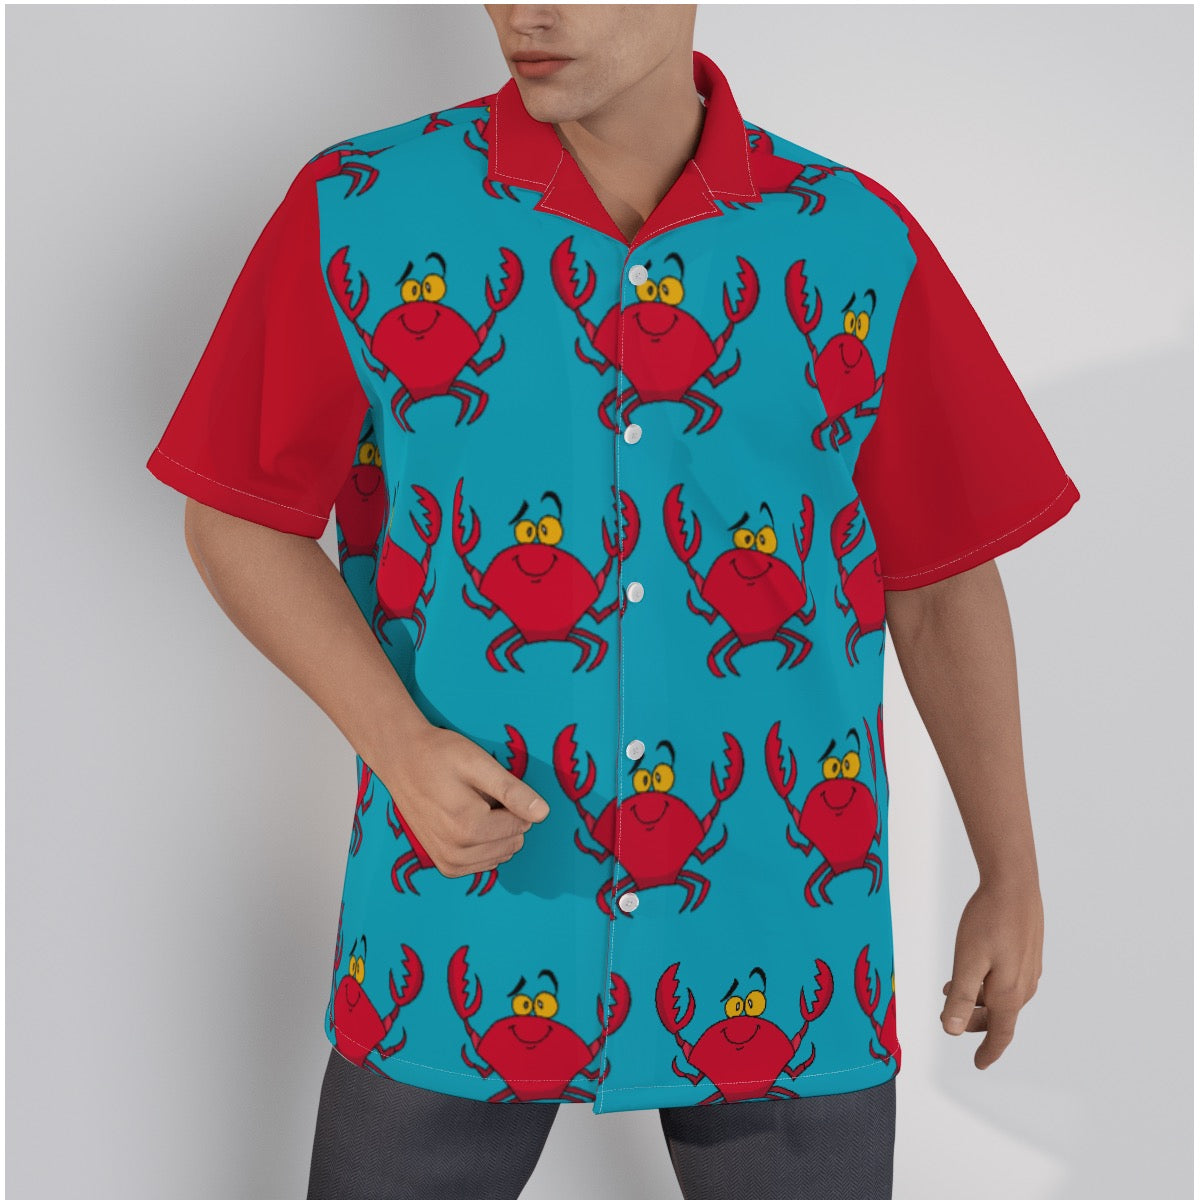 Feeling' Crabby Camp Hawaiian shirt